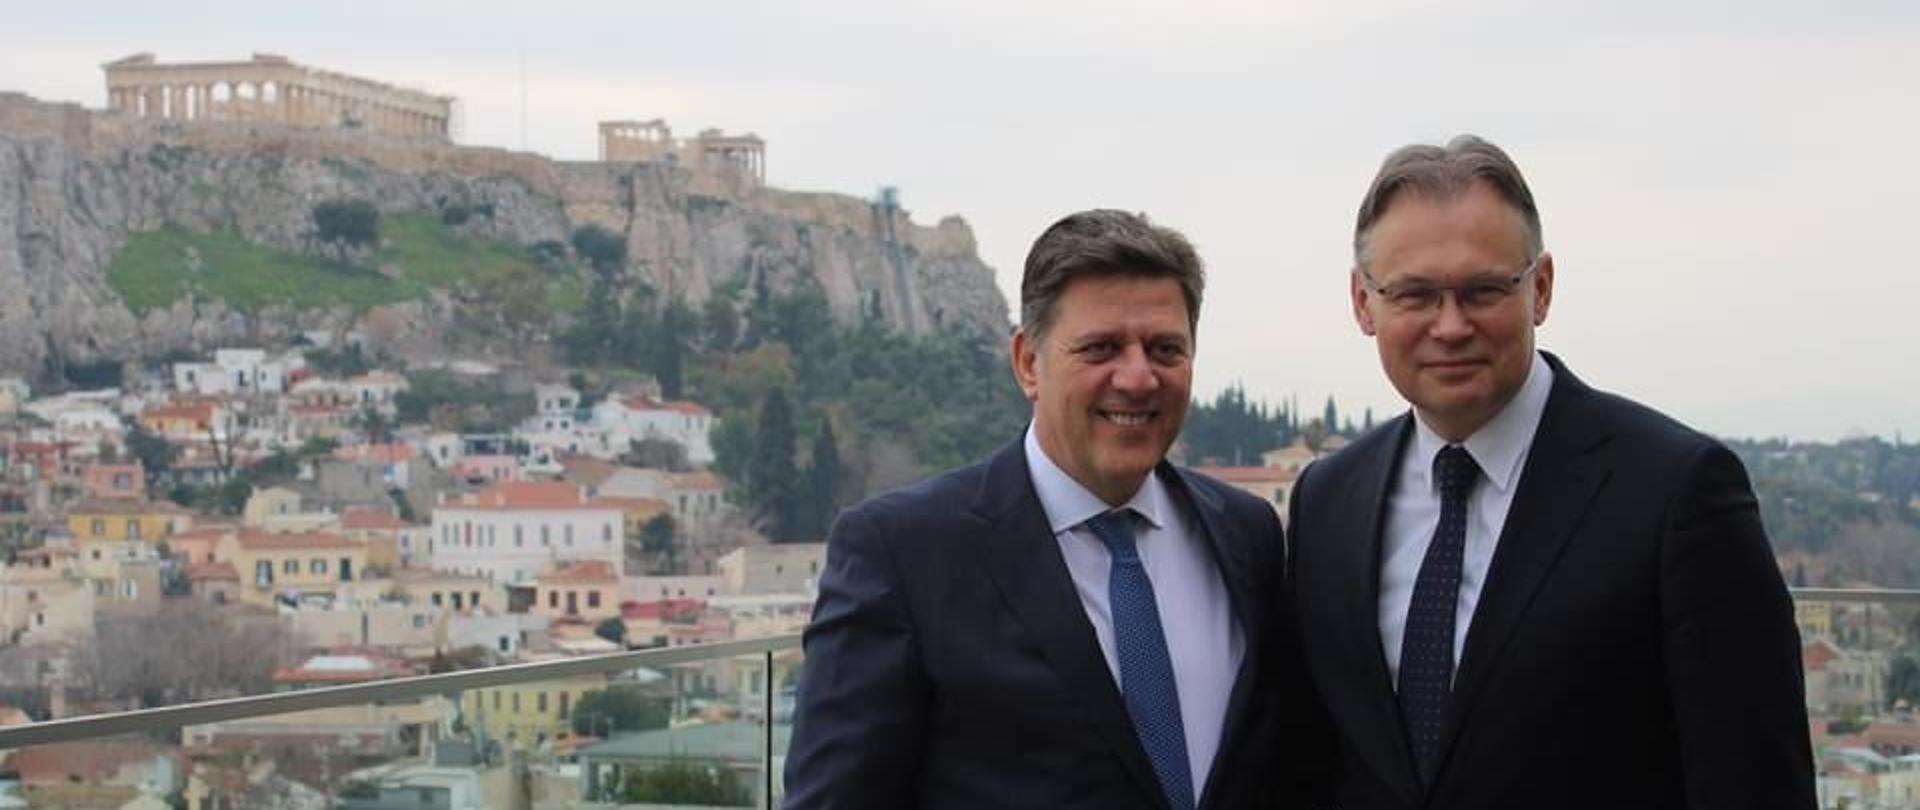 Podsekretarz stanu Arkadiusz Mularczyk z wizytą w Grecji 